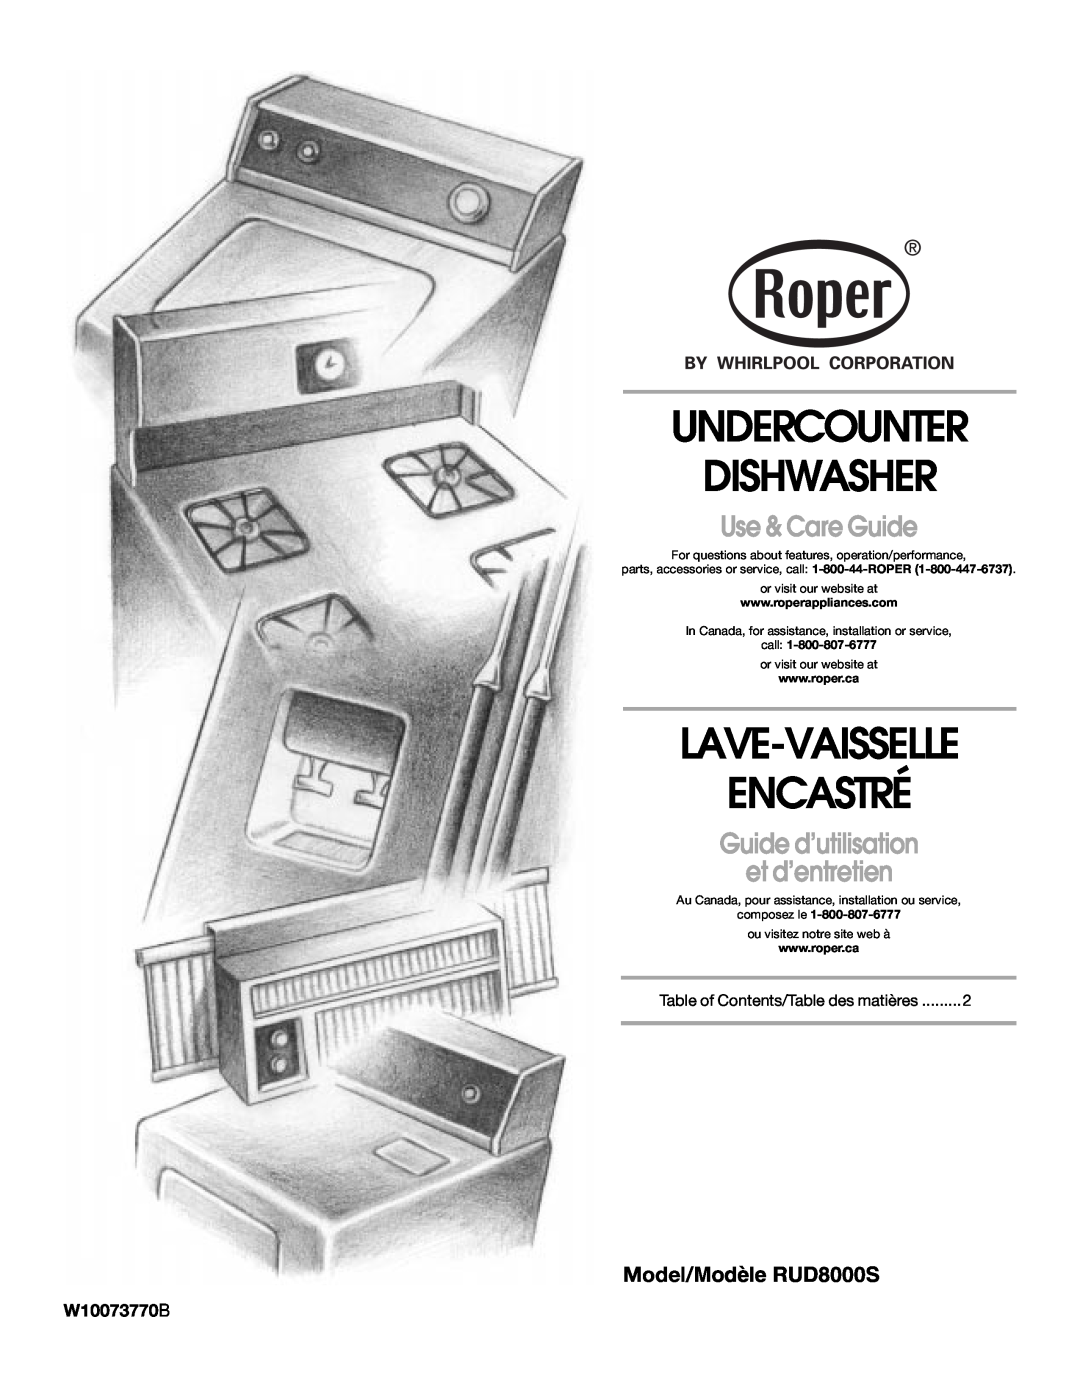 Roper manual Model/Modèle RUD8000S, W10073770B, Undercounter Dishwasher, Lave-Vaisselle Encastré, Use & Care Guide 